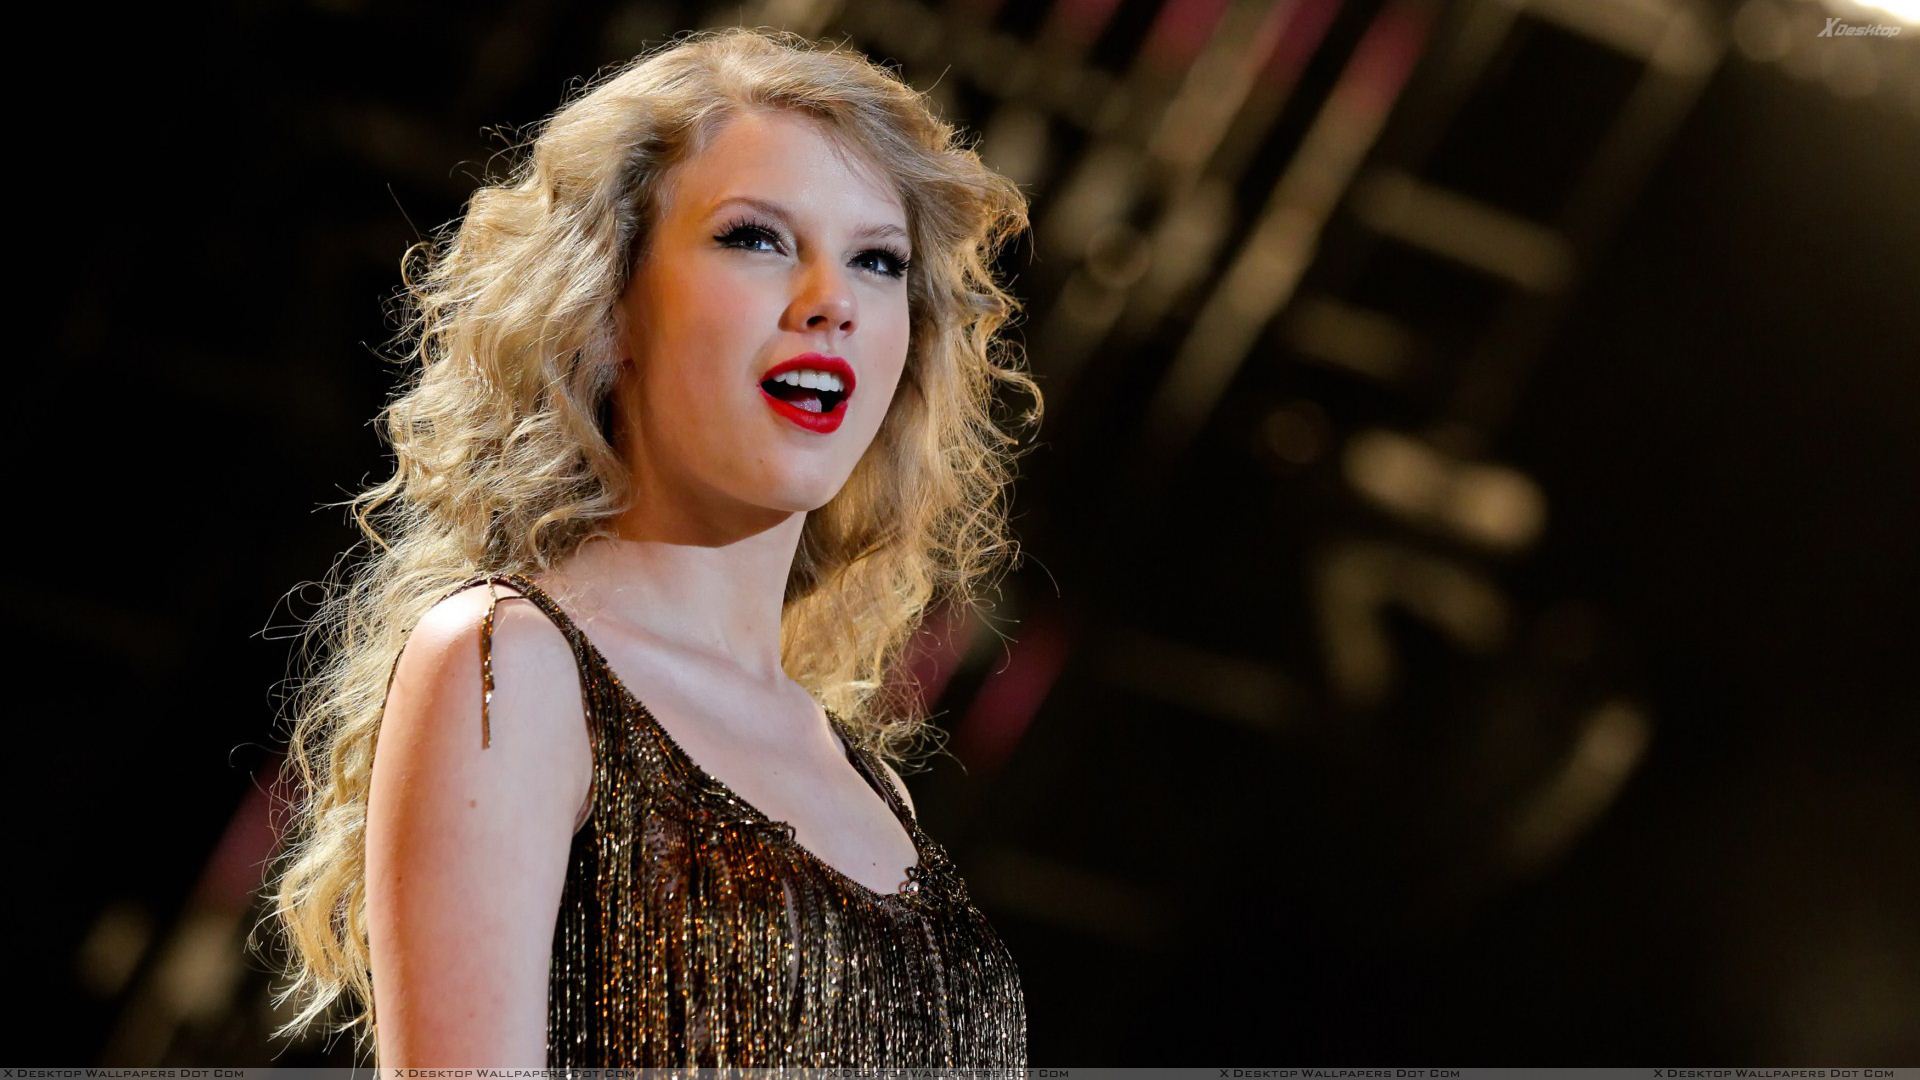 Taylor-Swift-Hot-Red-Lips-HD-Wallpaper.jpg